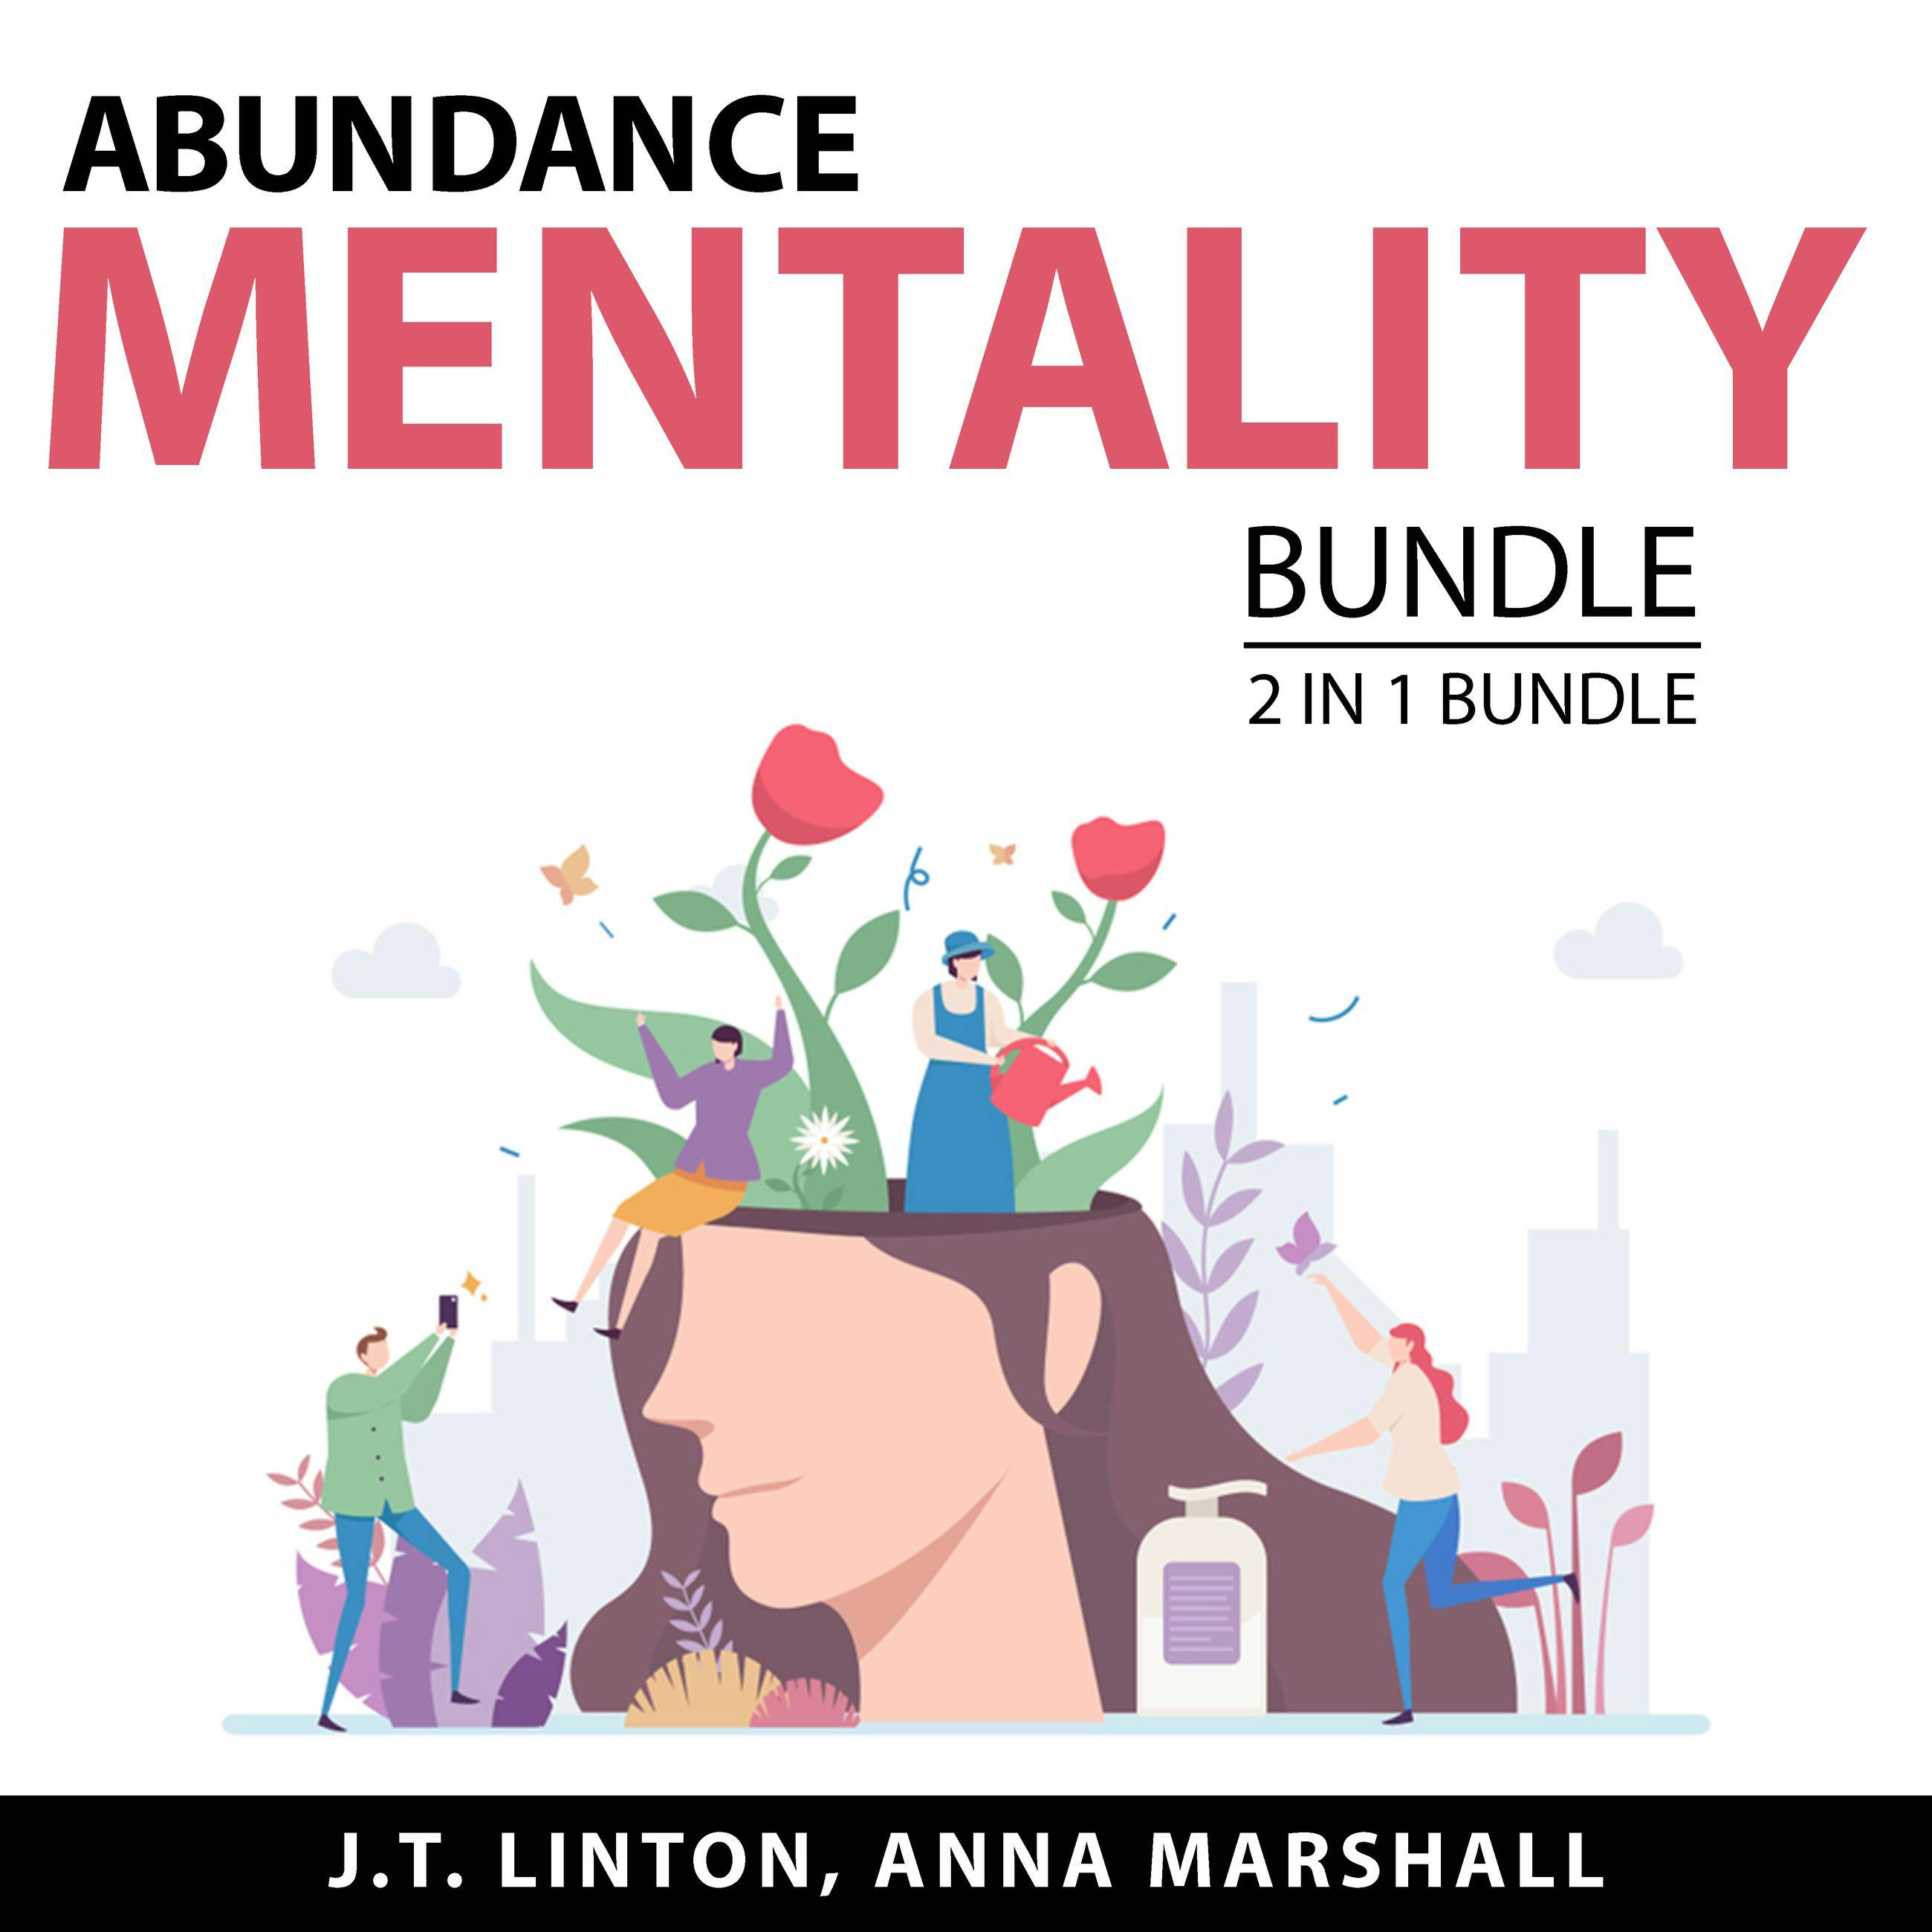 Abundance Mentality Bundle, 2 in 1 Bundle: Abundance Mindset and Power of Abundance Mindset - undefined